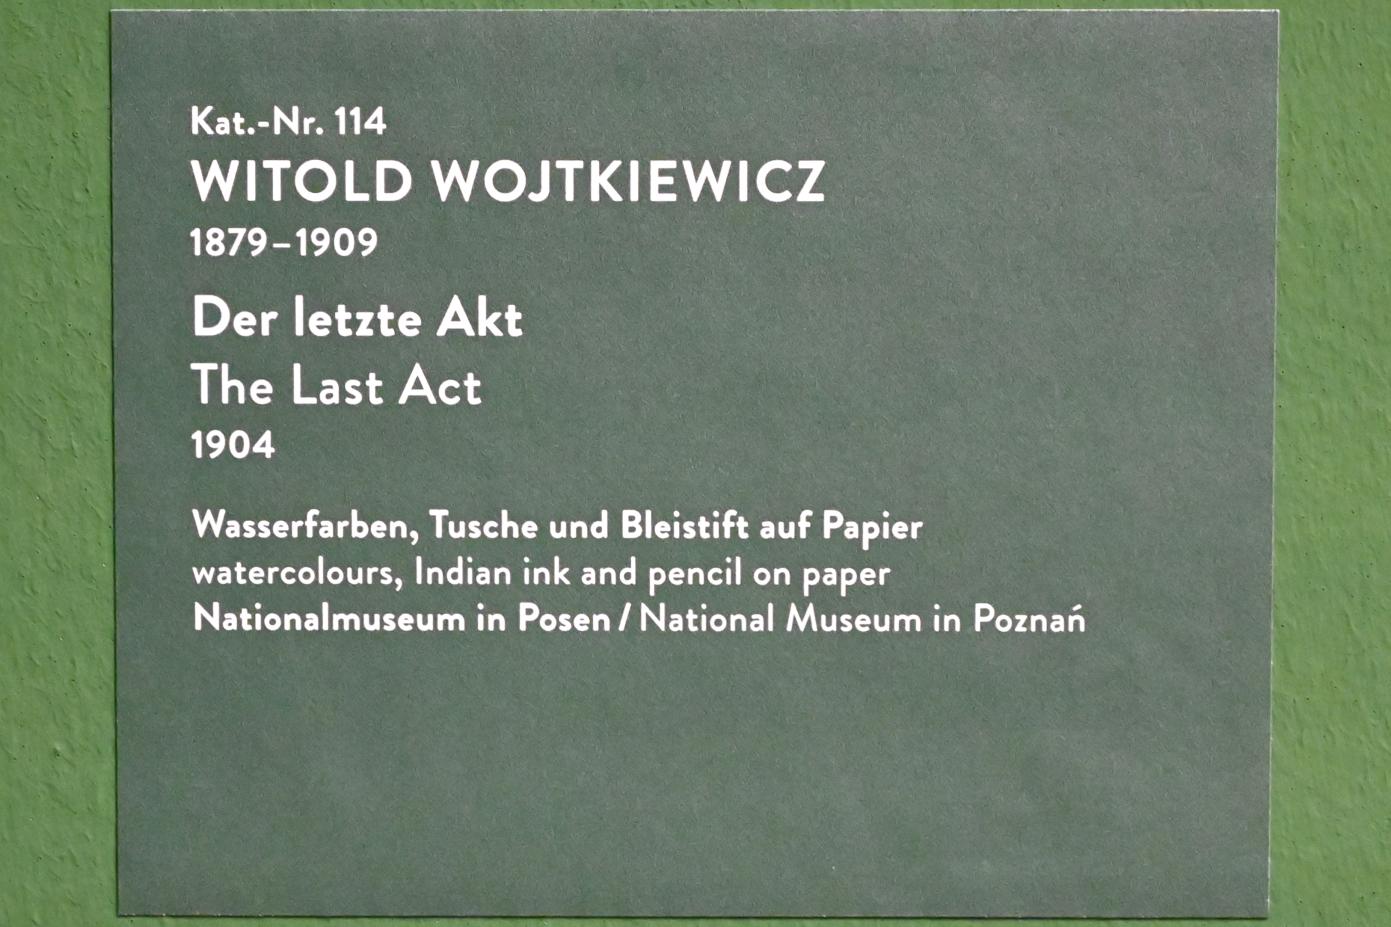 Witold Wojtkiewicz (1904–1909), Der letzte Akt, München, Kunsthalle, Ausstellung "Polnischer Symbolismus um 1900" vom 25.03.-07.08.2022, Saal 10 - Fantastische Welten, 1904, Bild 2/2